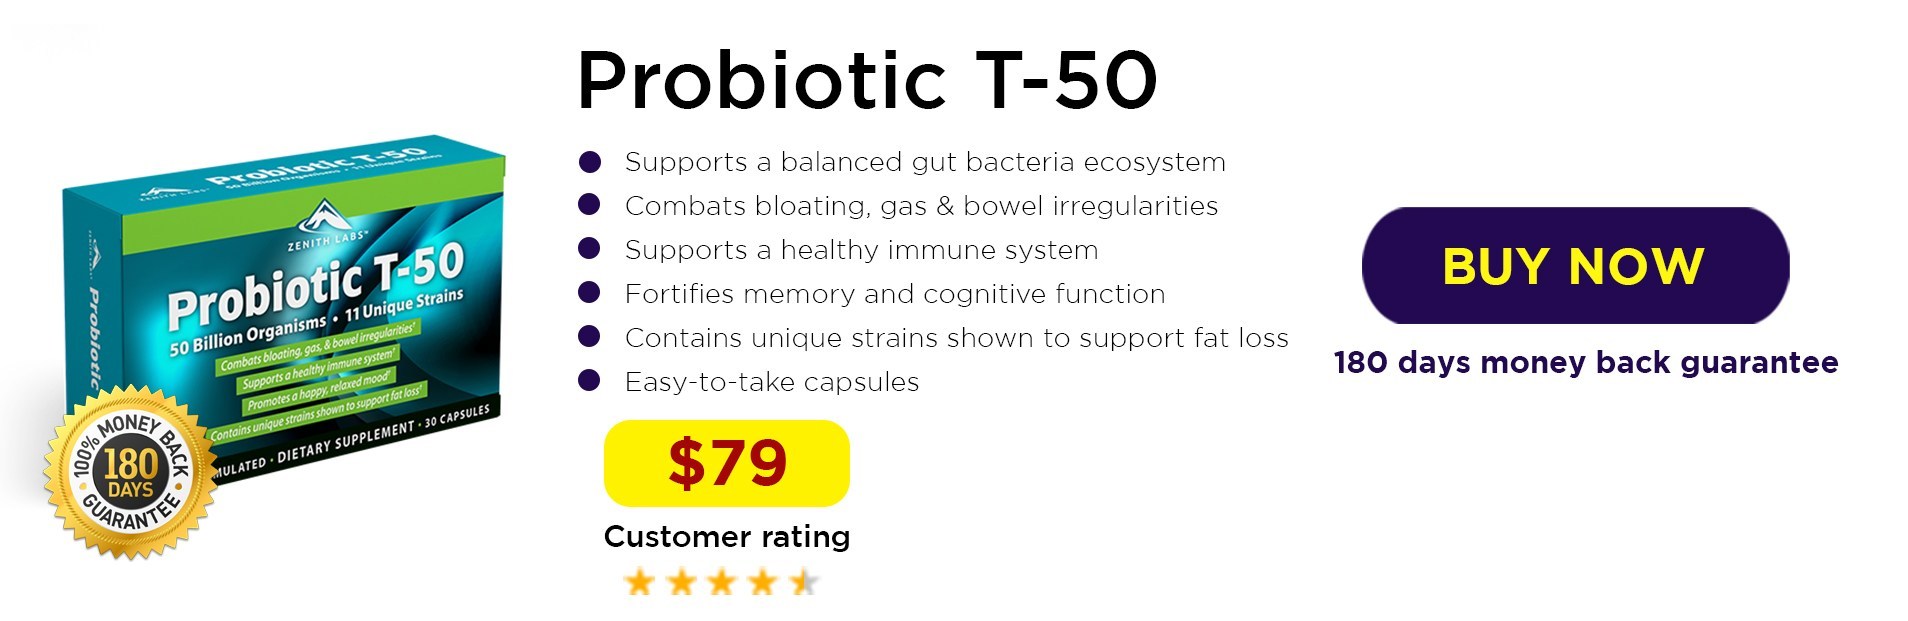 Probiotic-T-50